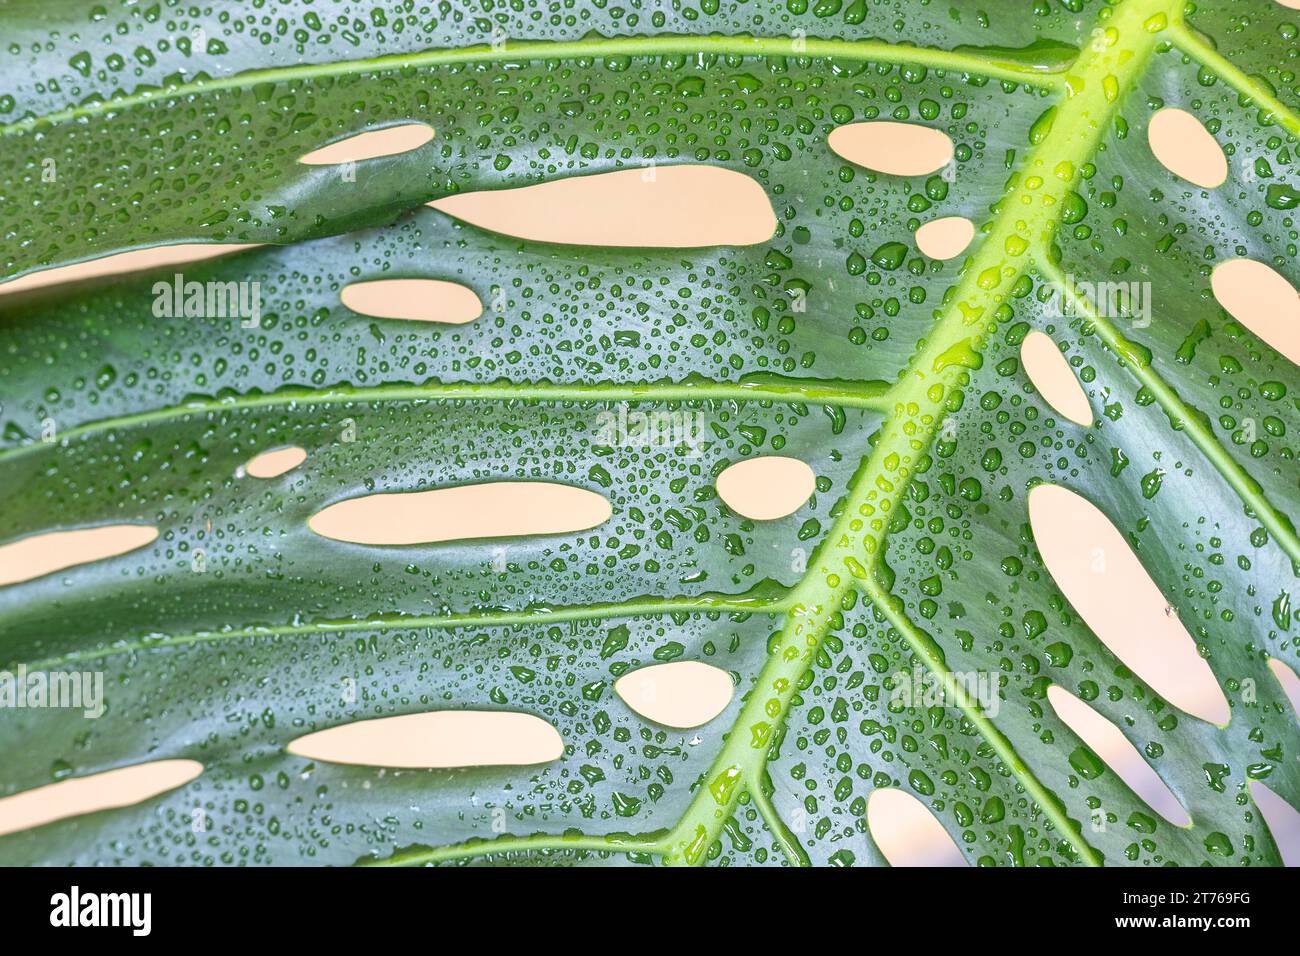 Nahaufnahme des grossen Blattes der Monstera deliciosa-Pflanze Stockfoto